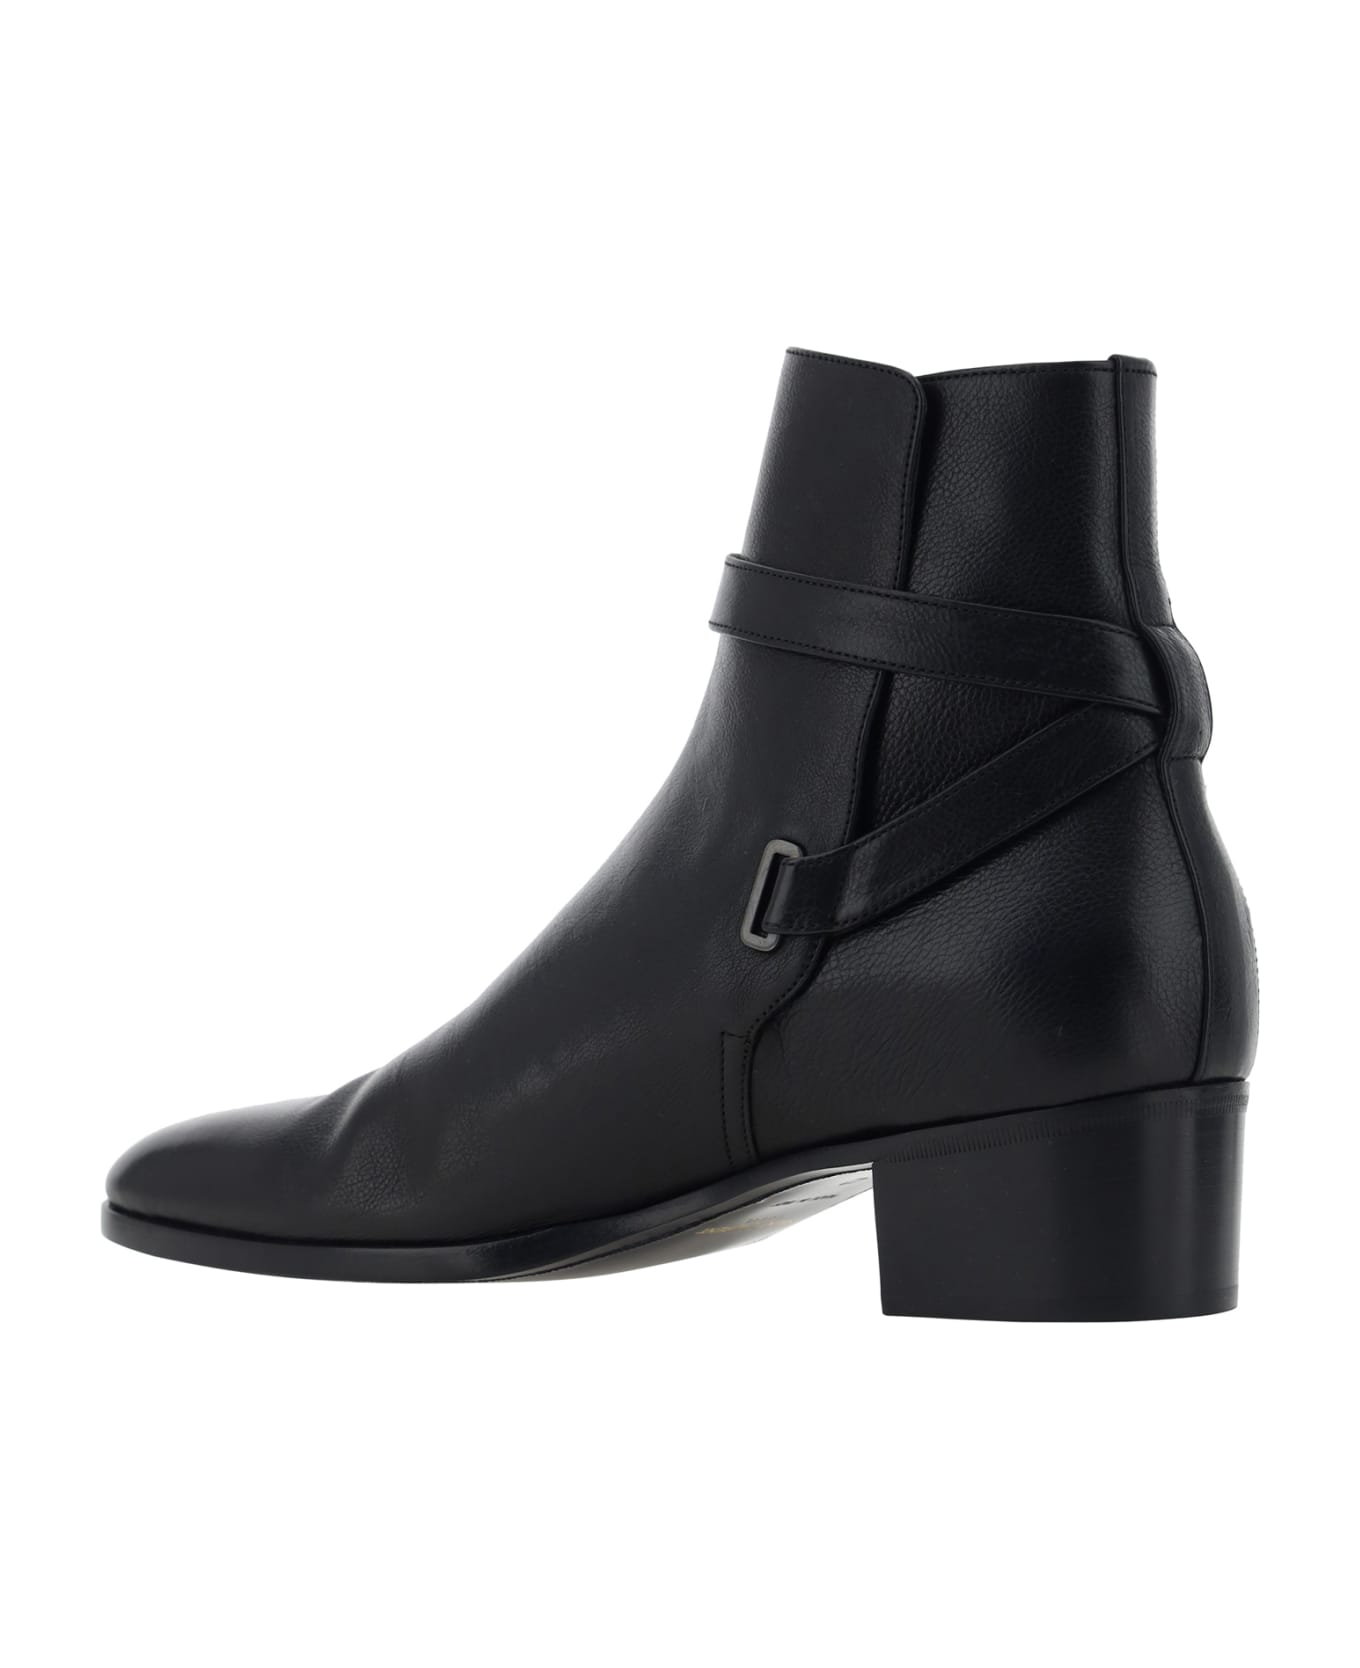 Saint Laurent Ankle Boots - Nero